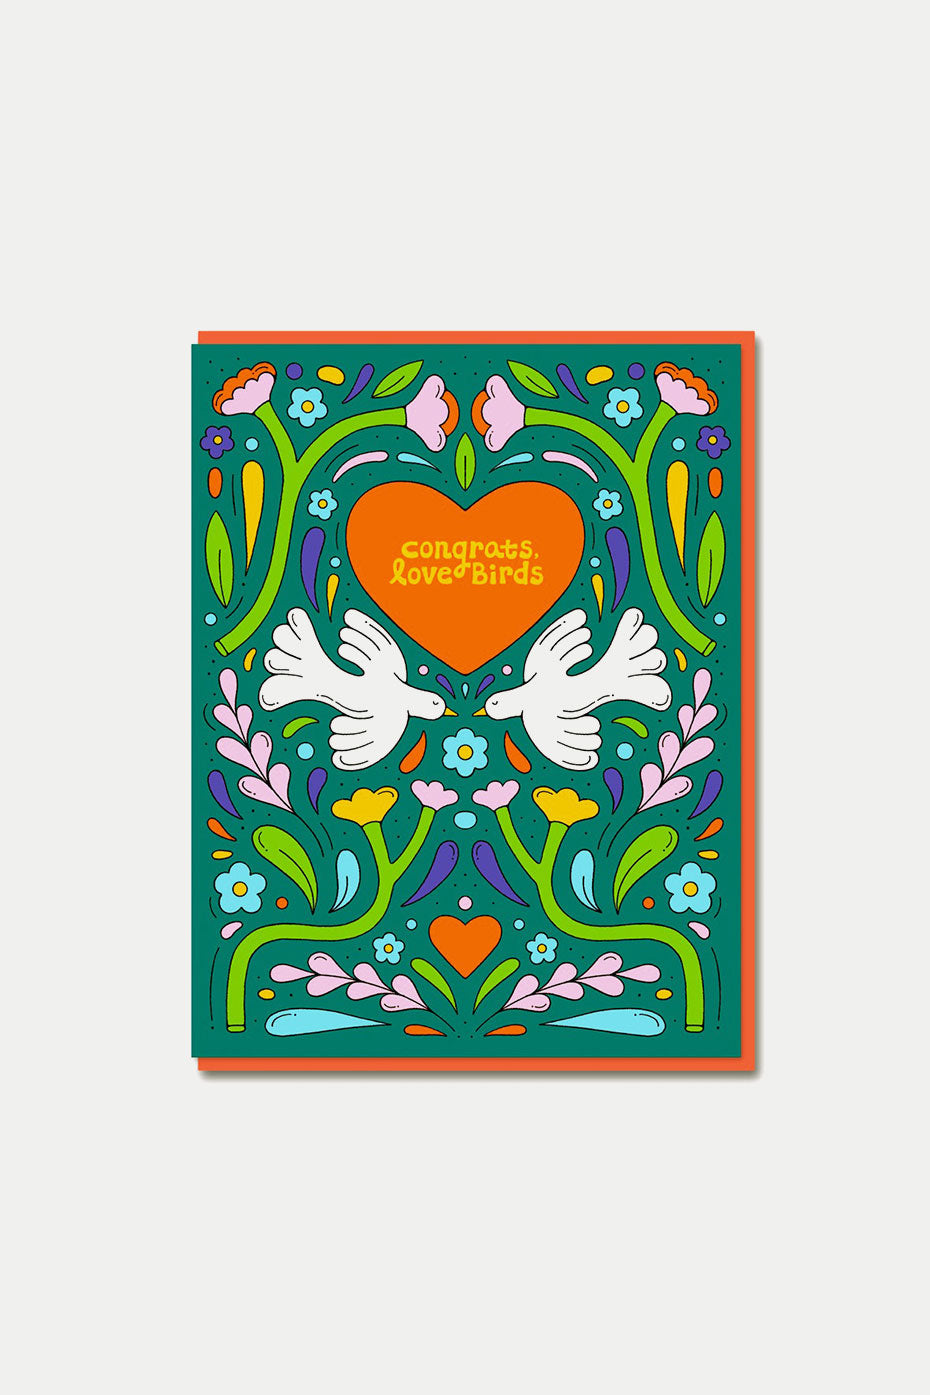 1973 Congrats Love Birds Card